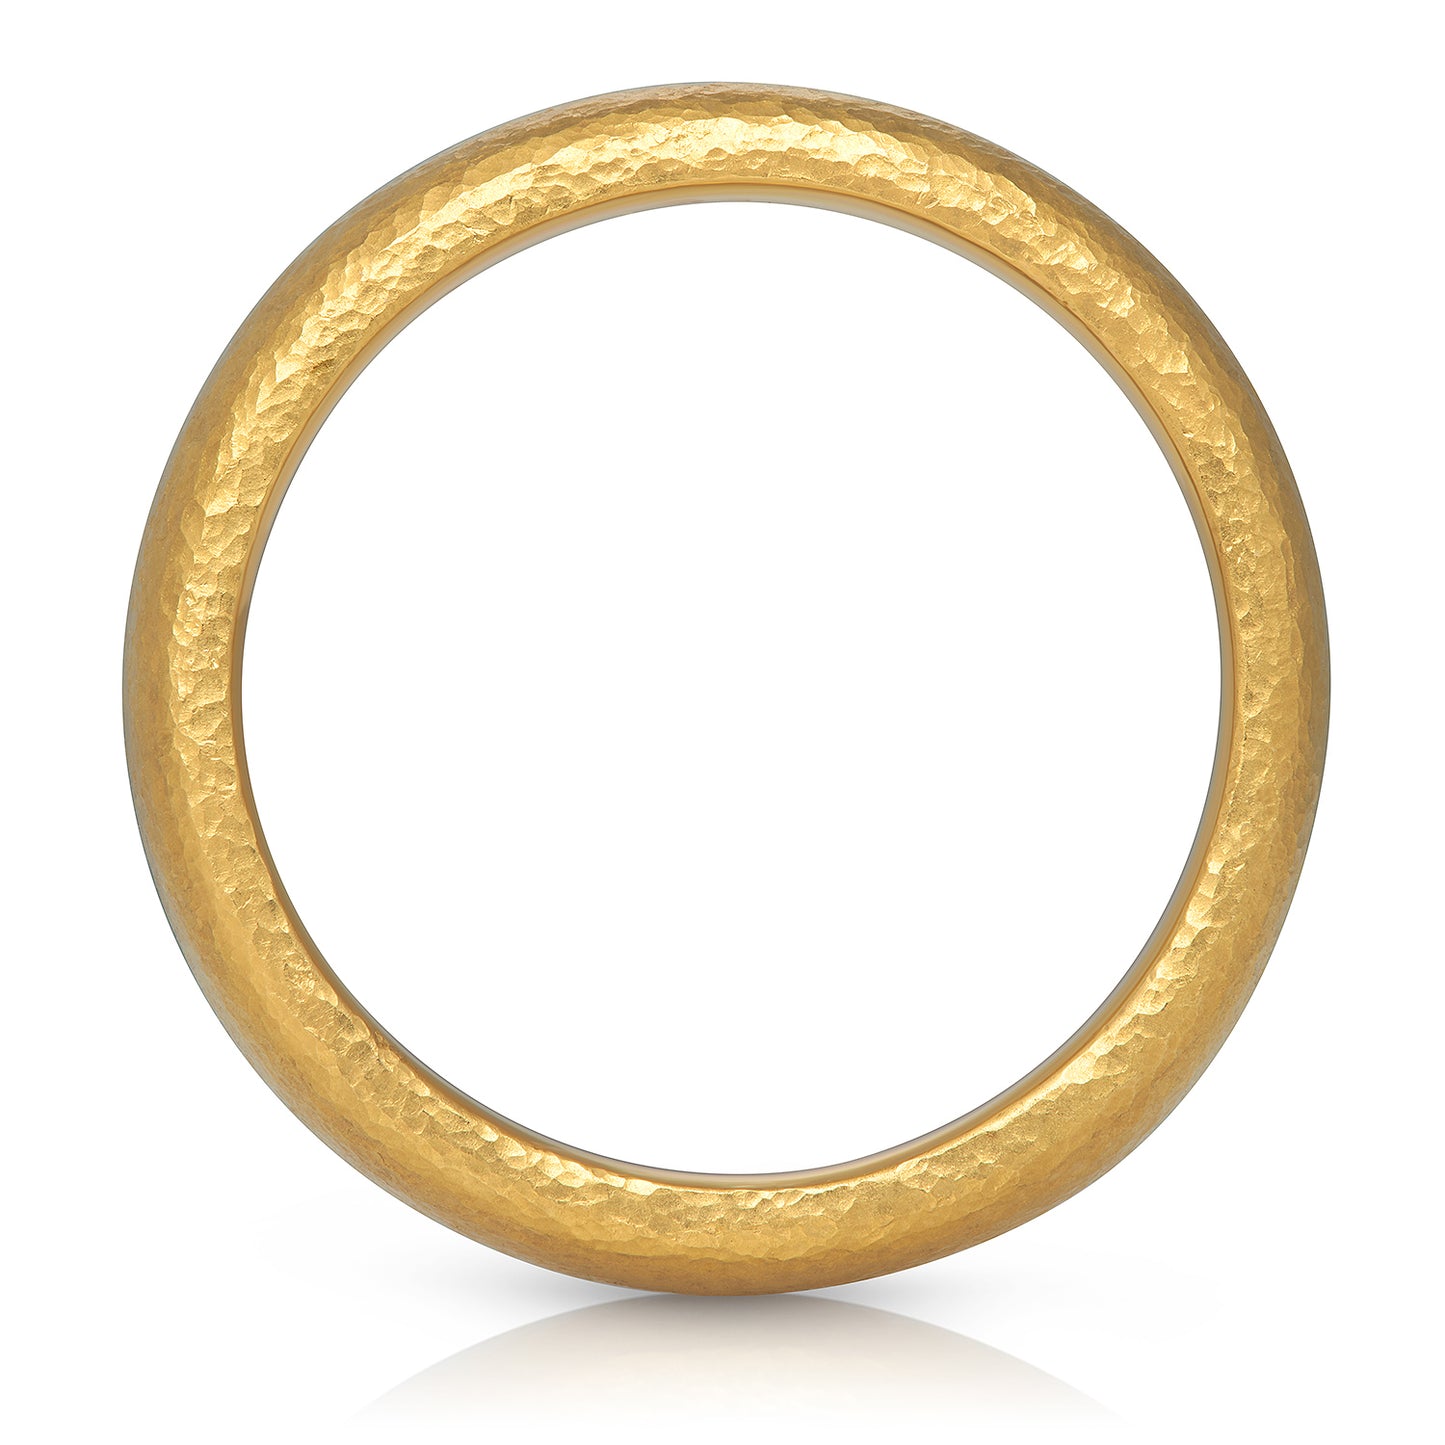 Solid 22 Karat Yellow Gold Men's Band Ring